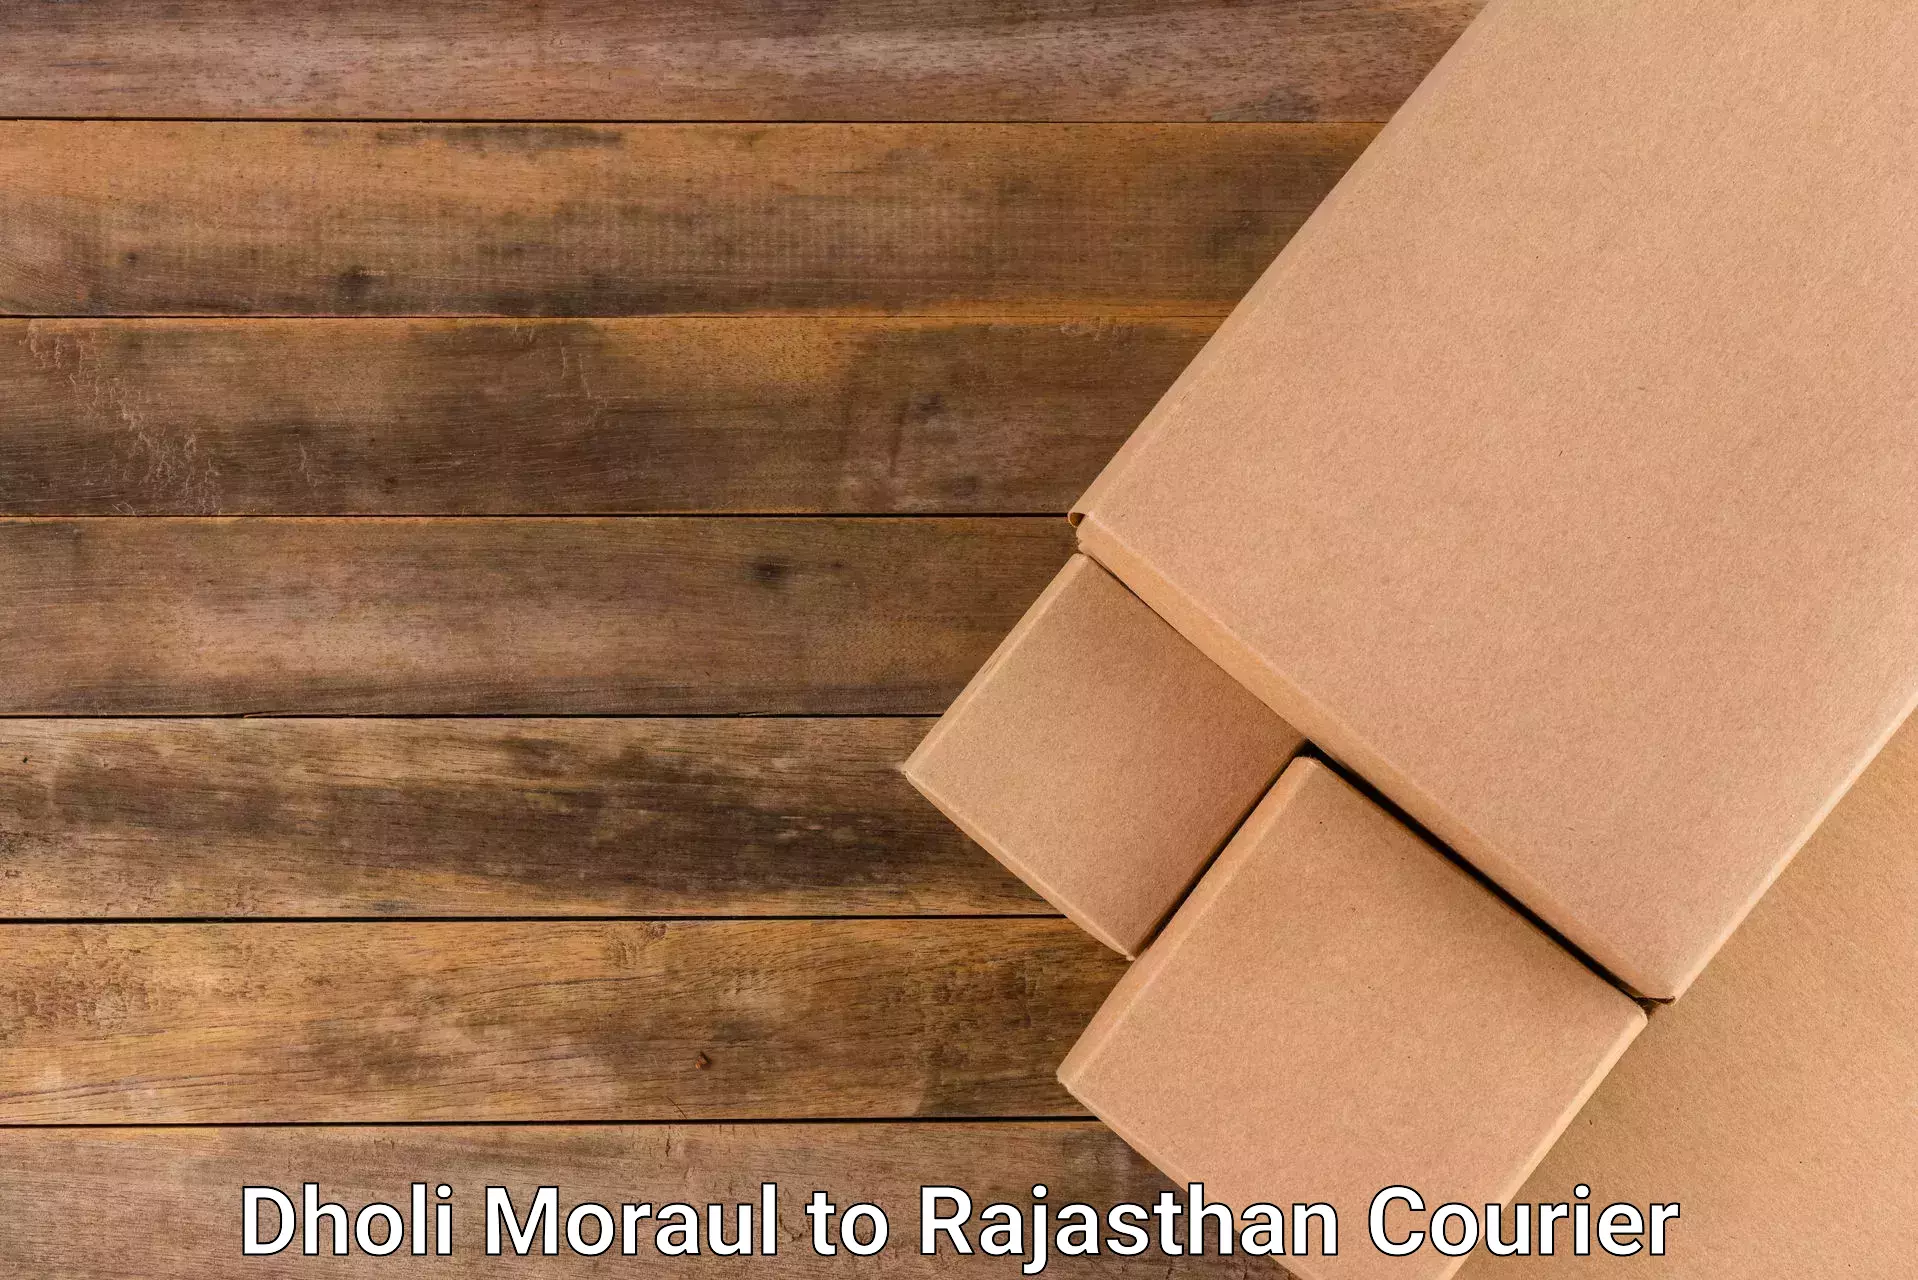 Courier service comparison Dholi Moraul to Parbatsar